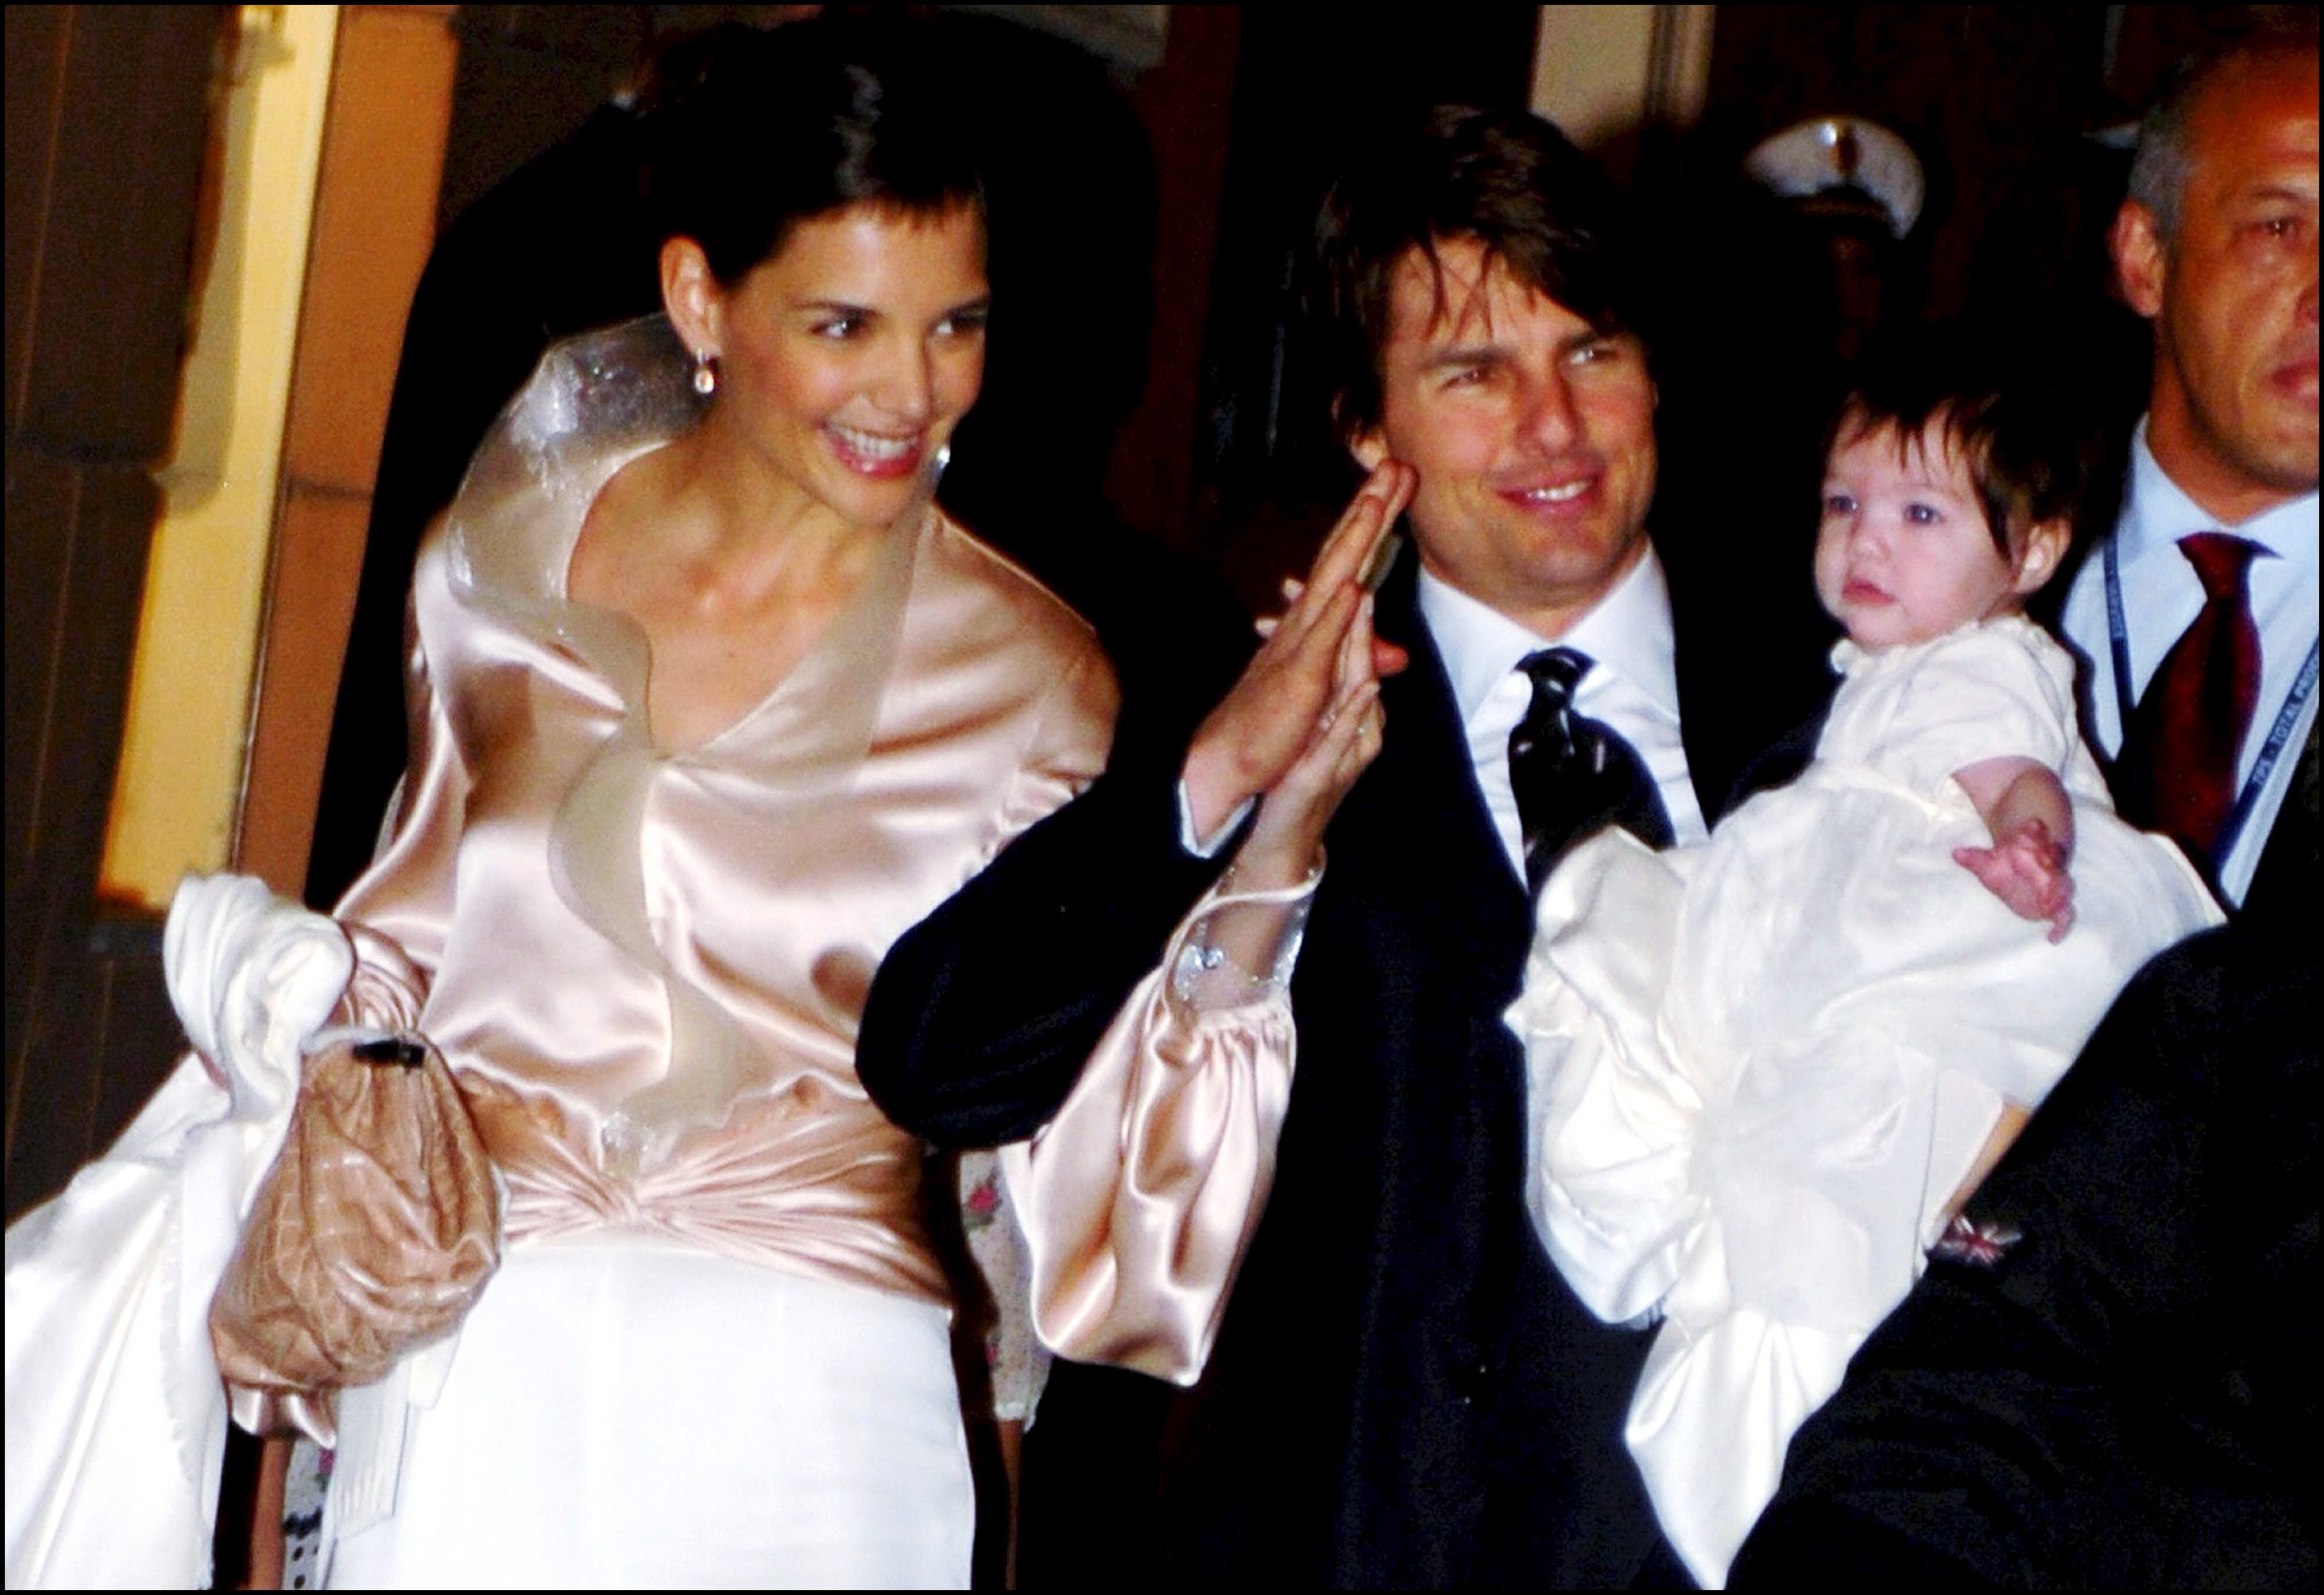 Tom Cruise et Katie Holmes avec leur fille Suri au restaurant "Nino" près de la Plaza di Spagna à Rome, Italie, le 16 novembre 2006 | Source : Getty Images